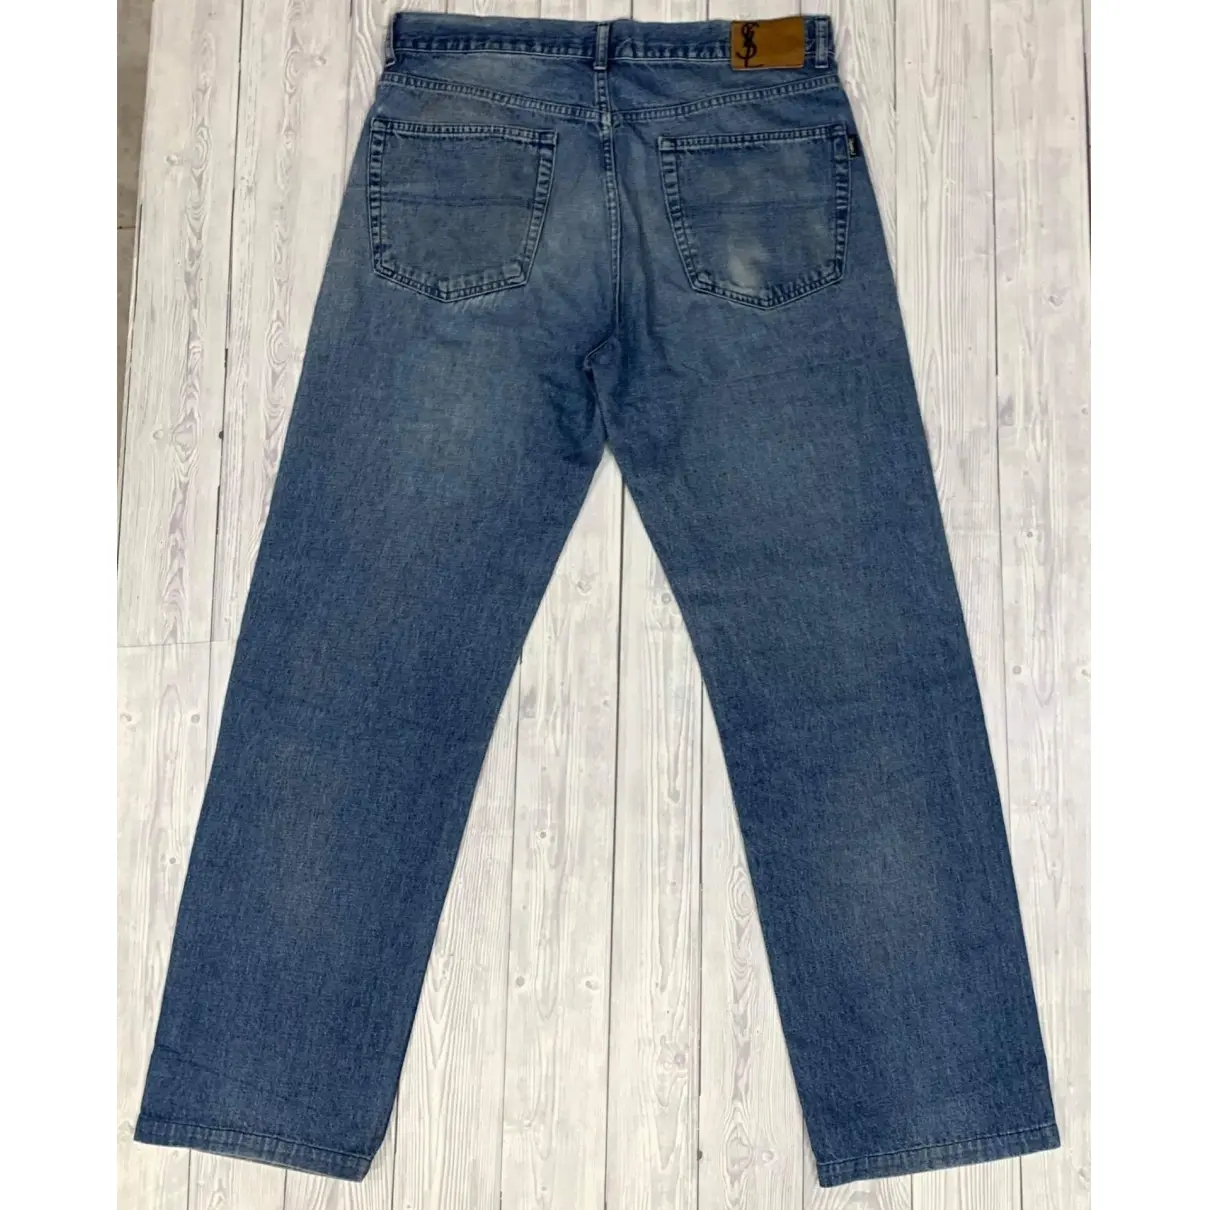 Buy Yves Saint Laurent Straight jeans online